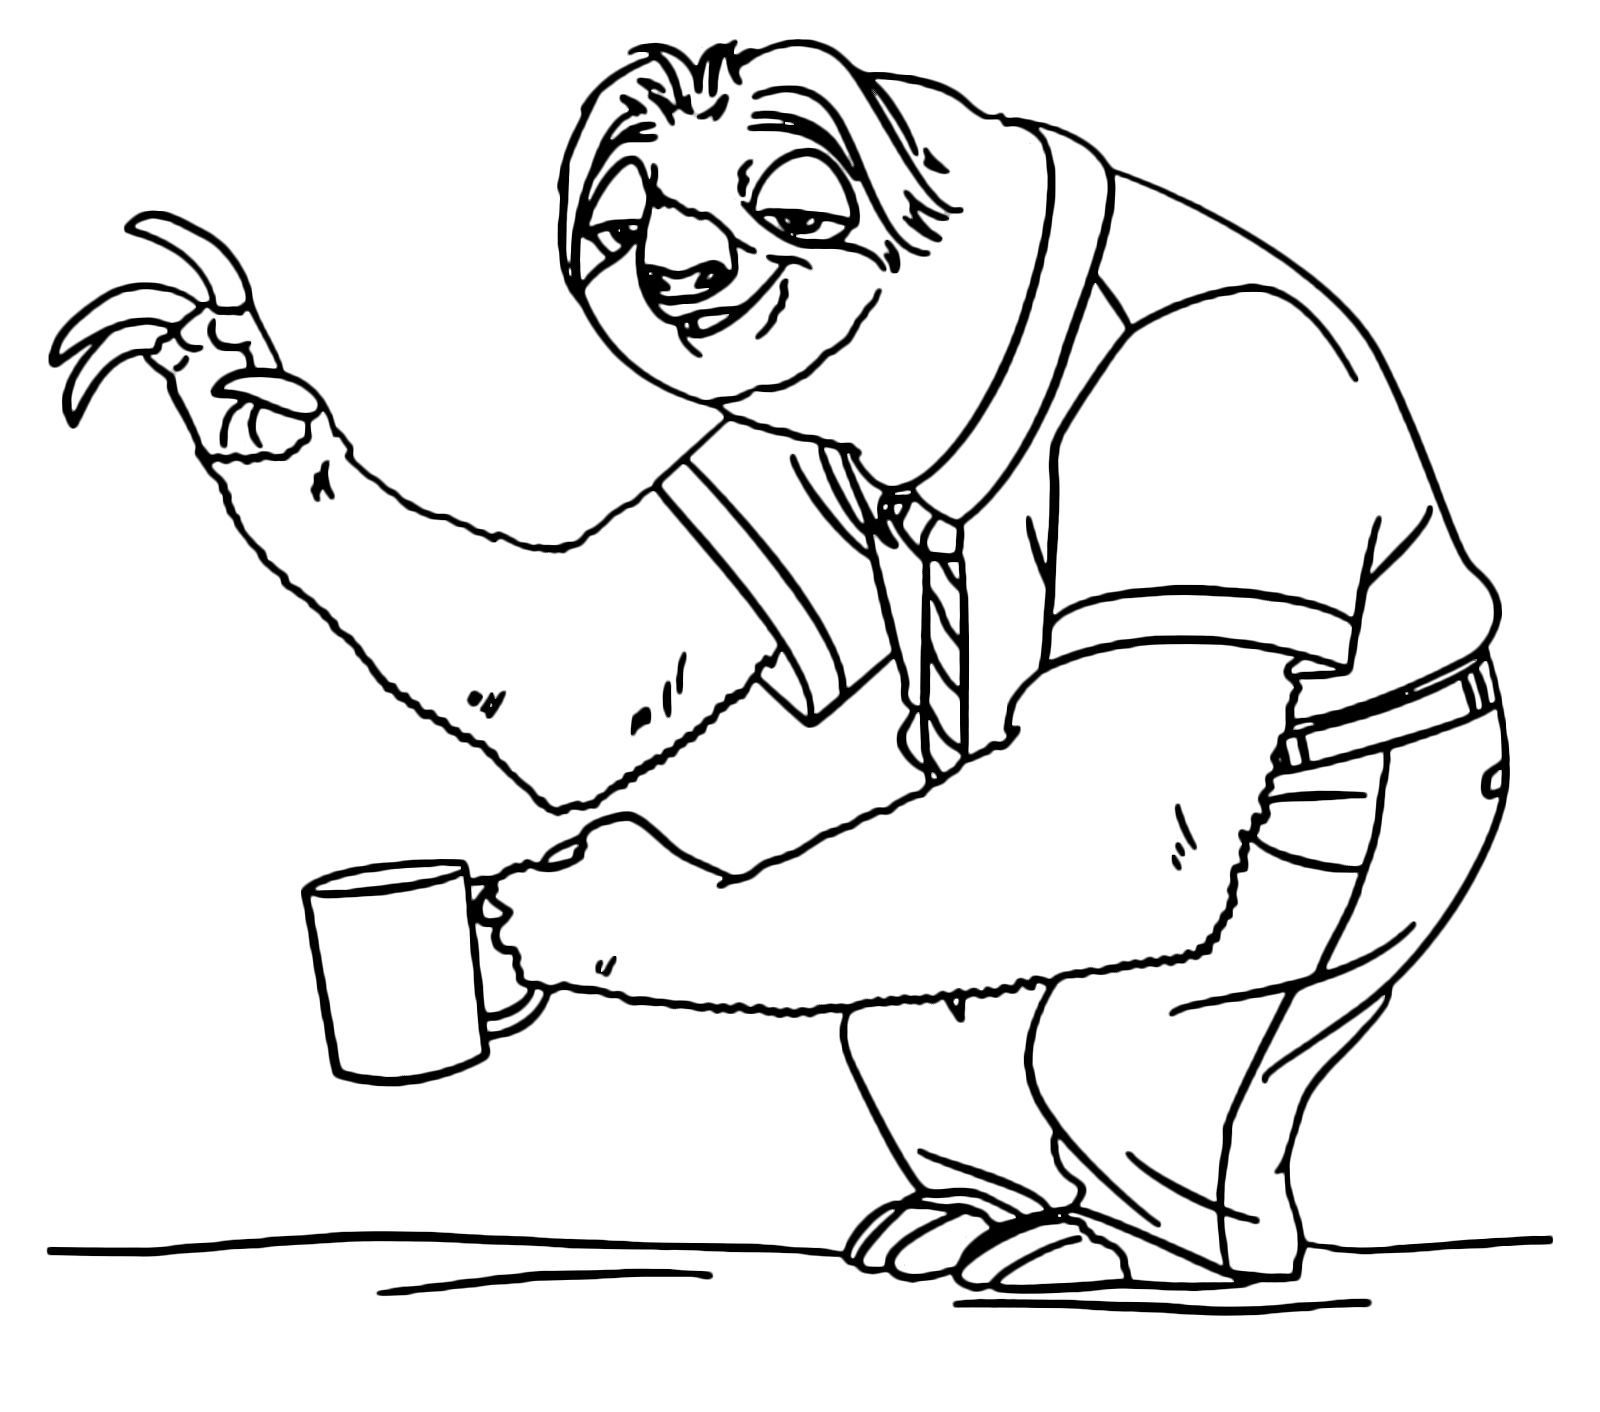 Flash Slothmore saluda con taza en mano Dibujo para Colorear